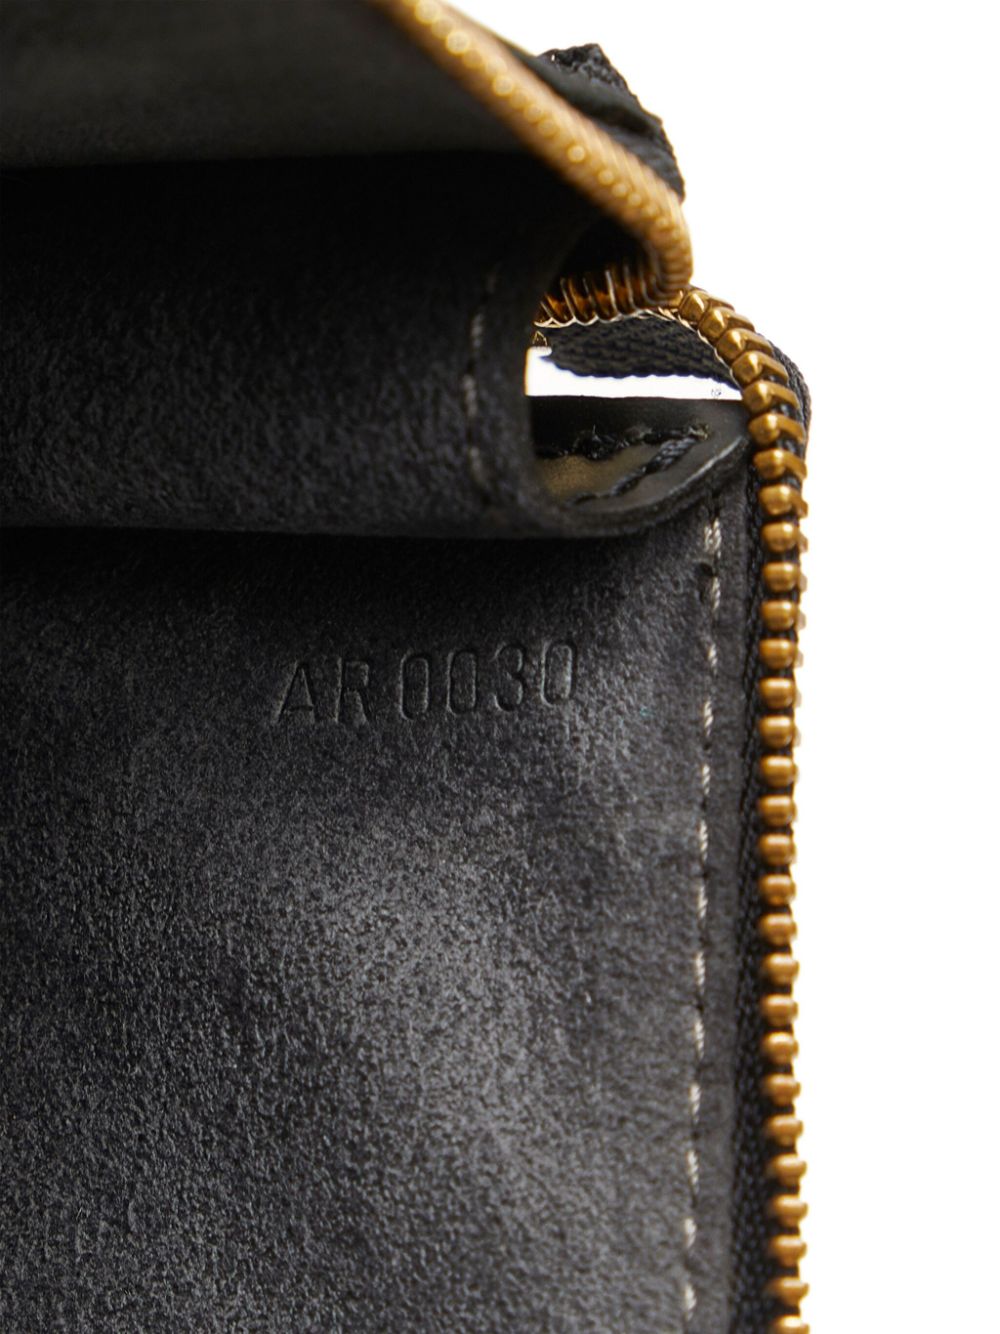 Louis Vuitton 2000 pre-owned Pochette Accessoires Clutch Bag - Farfetch